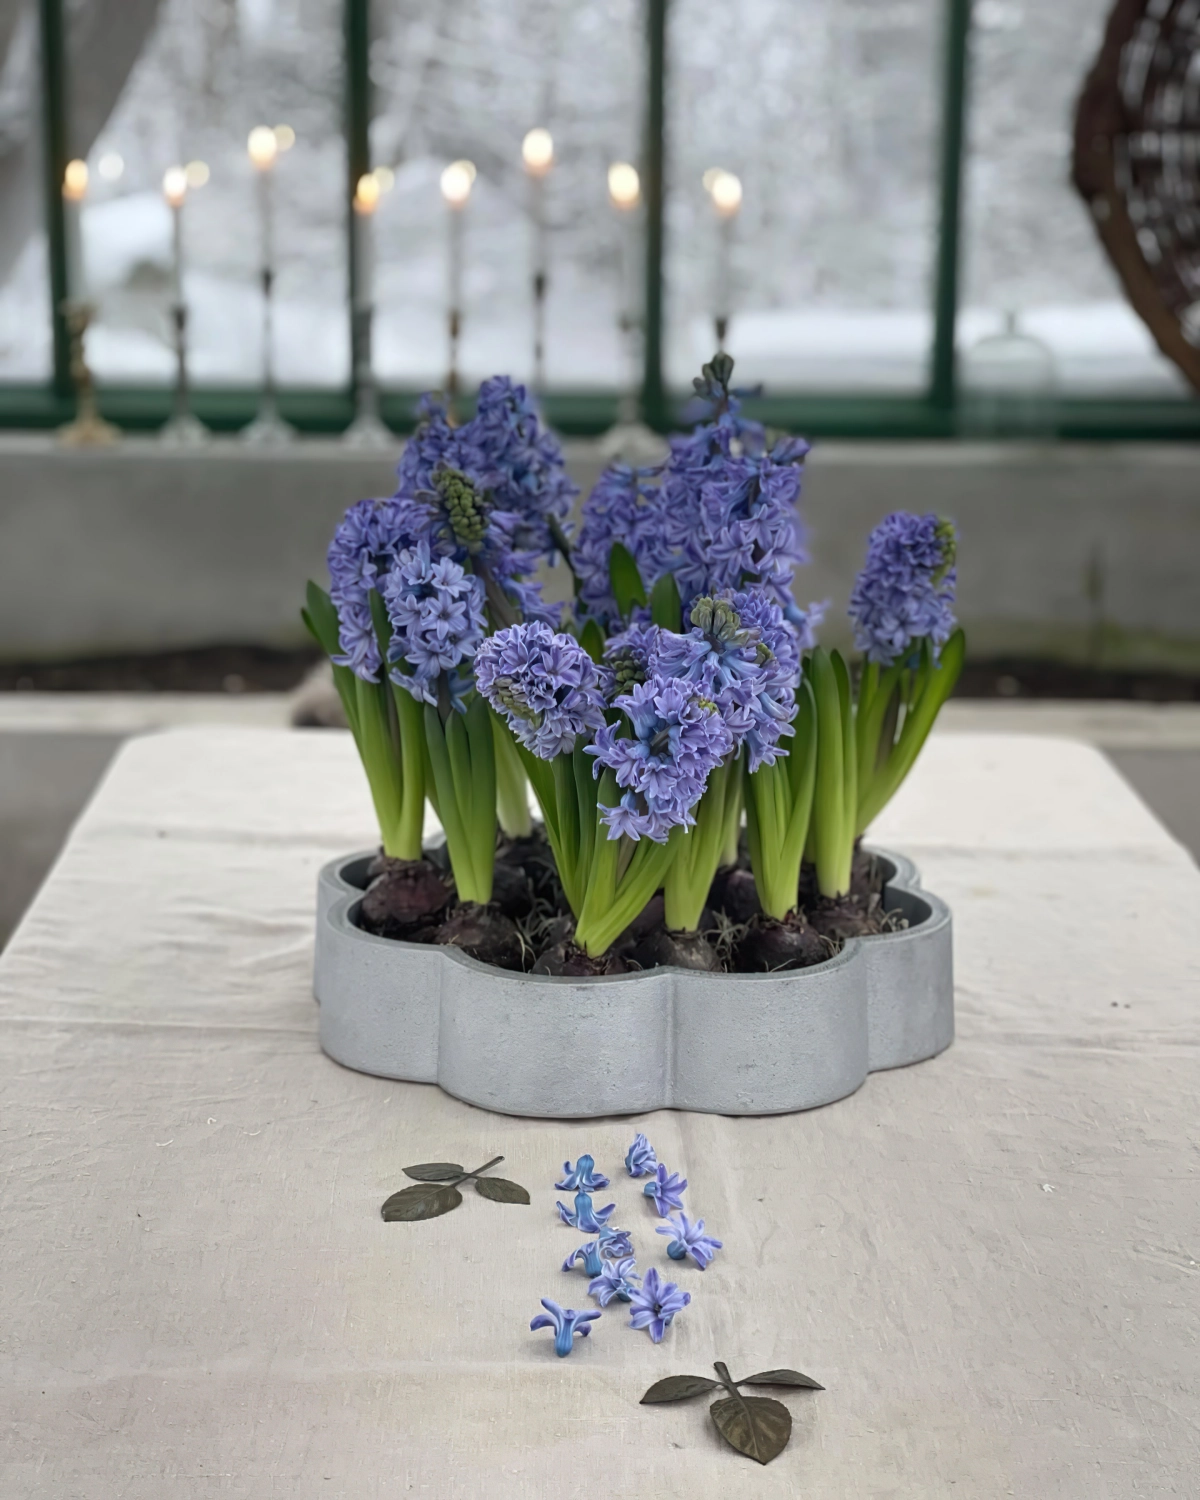 deco table avec jacinthes en pot interieur fleurs violettes bulbes bougeoirs